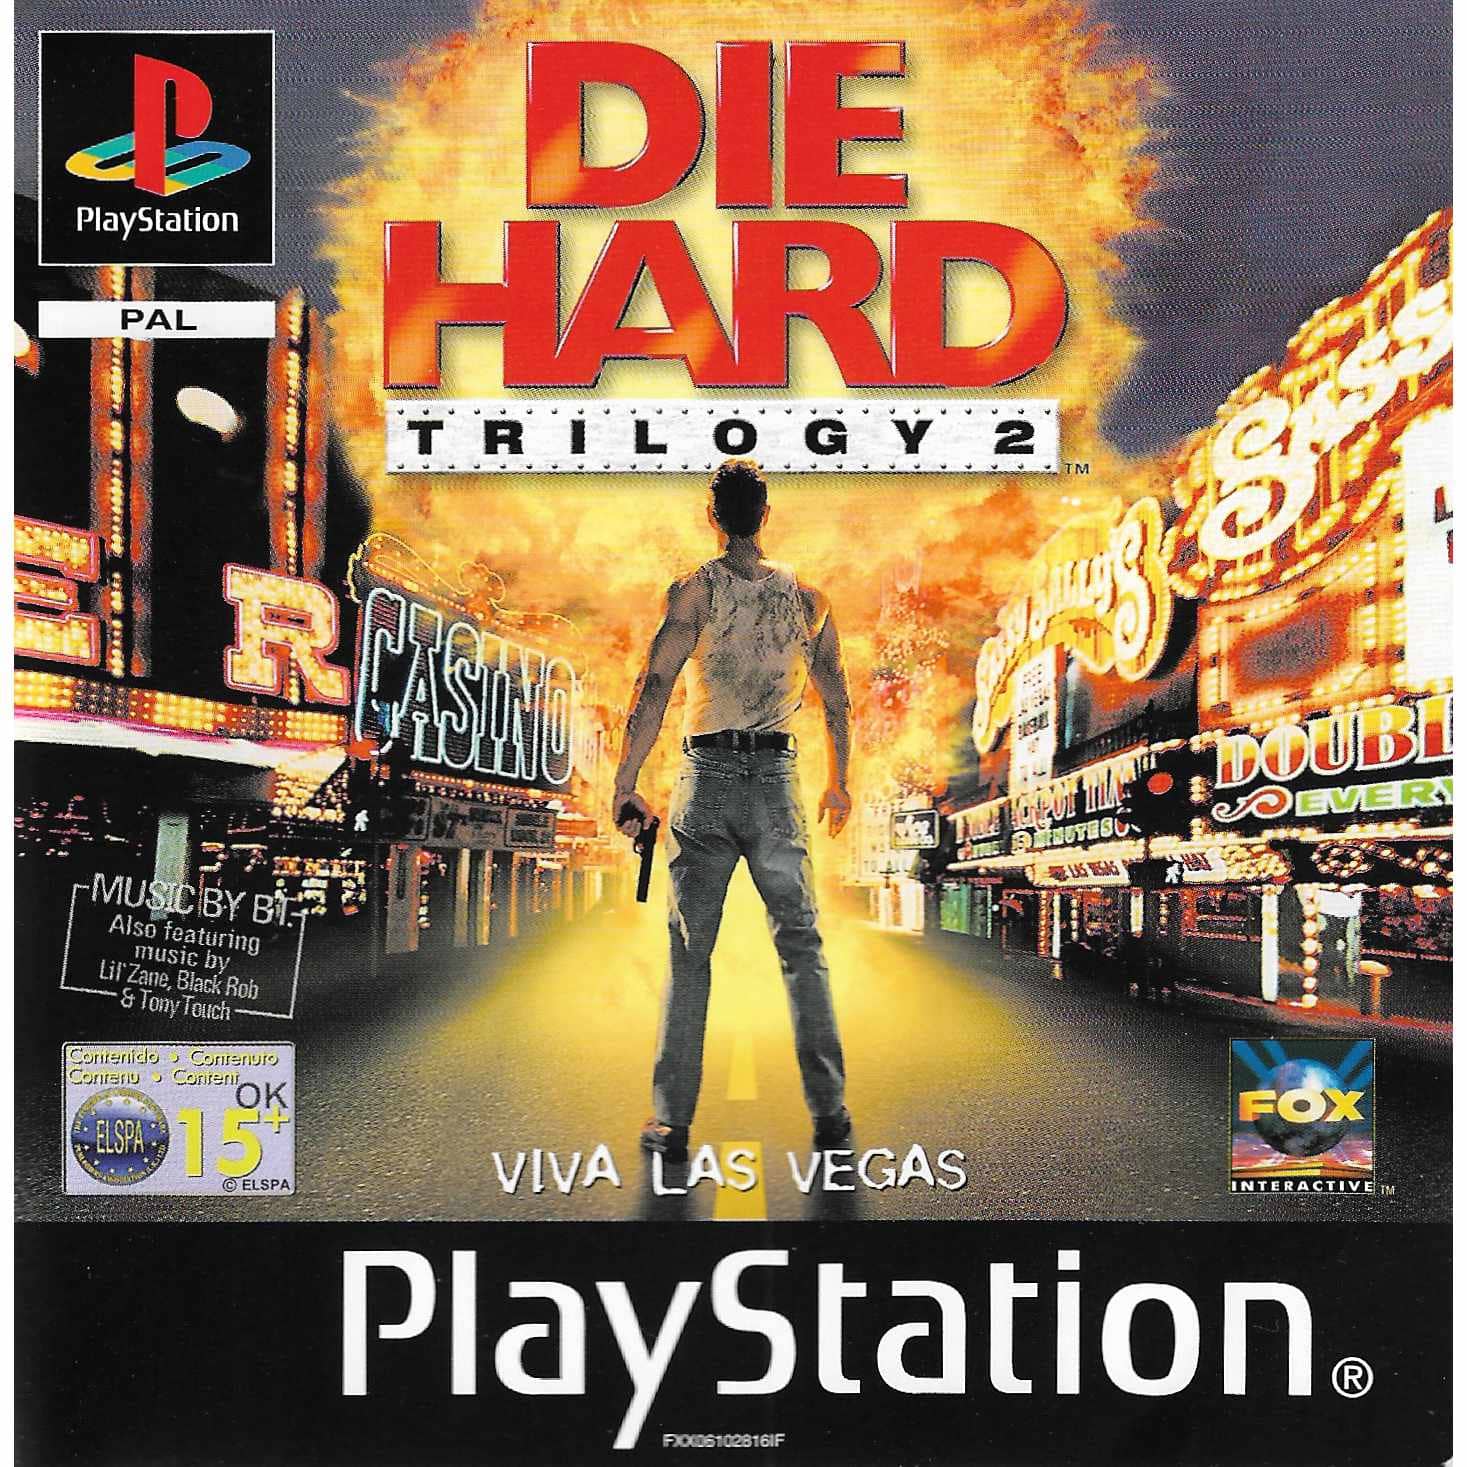 Die Hard Trilogy 2 Viva Las Vegas Playstation 1 PS1 (Begagnad)